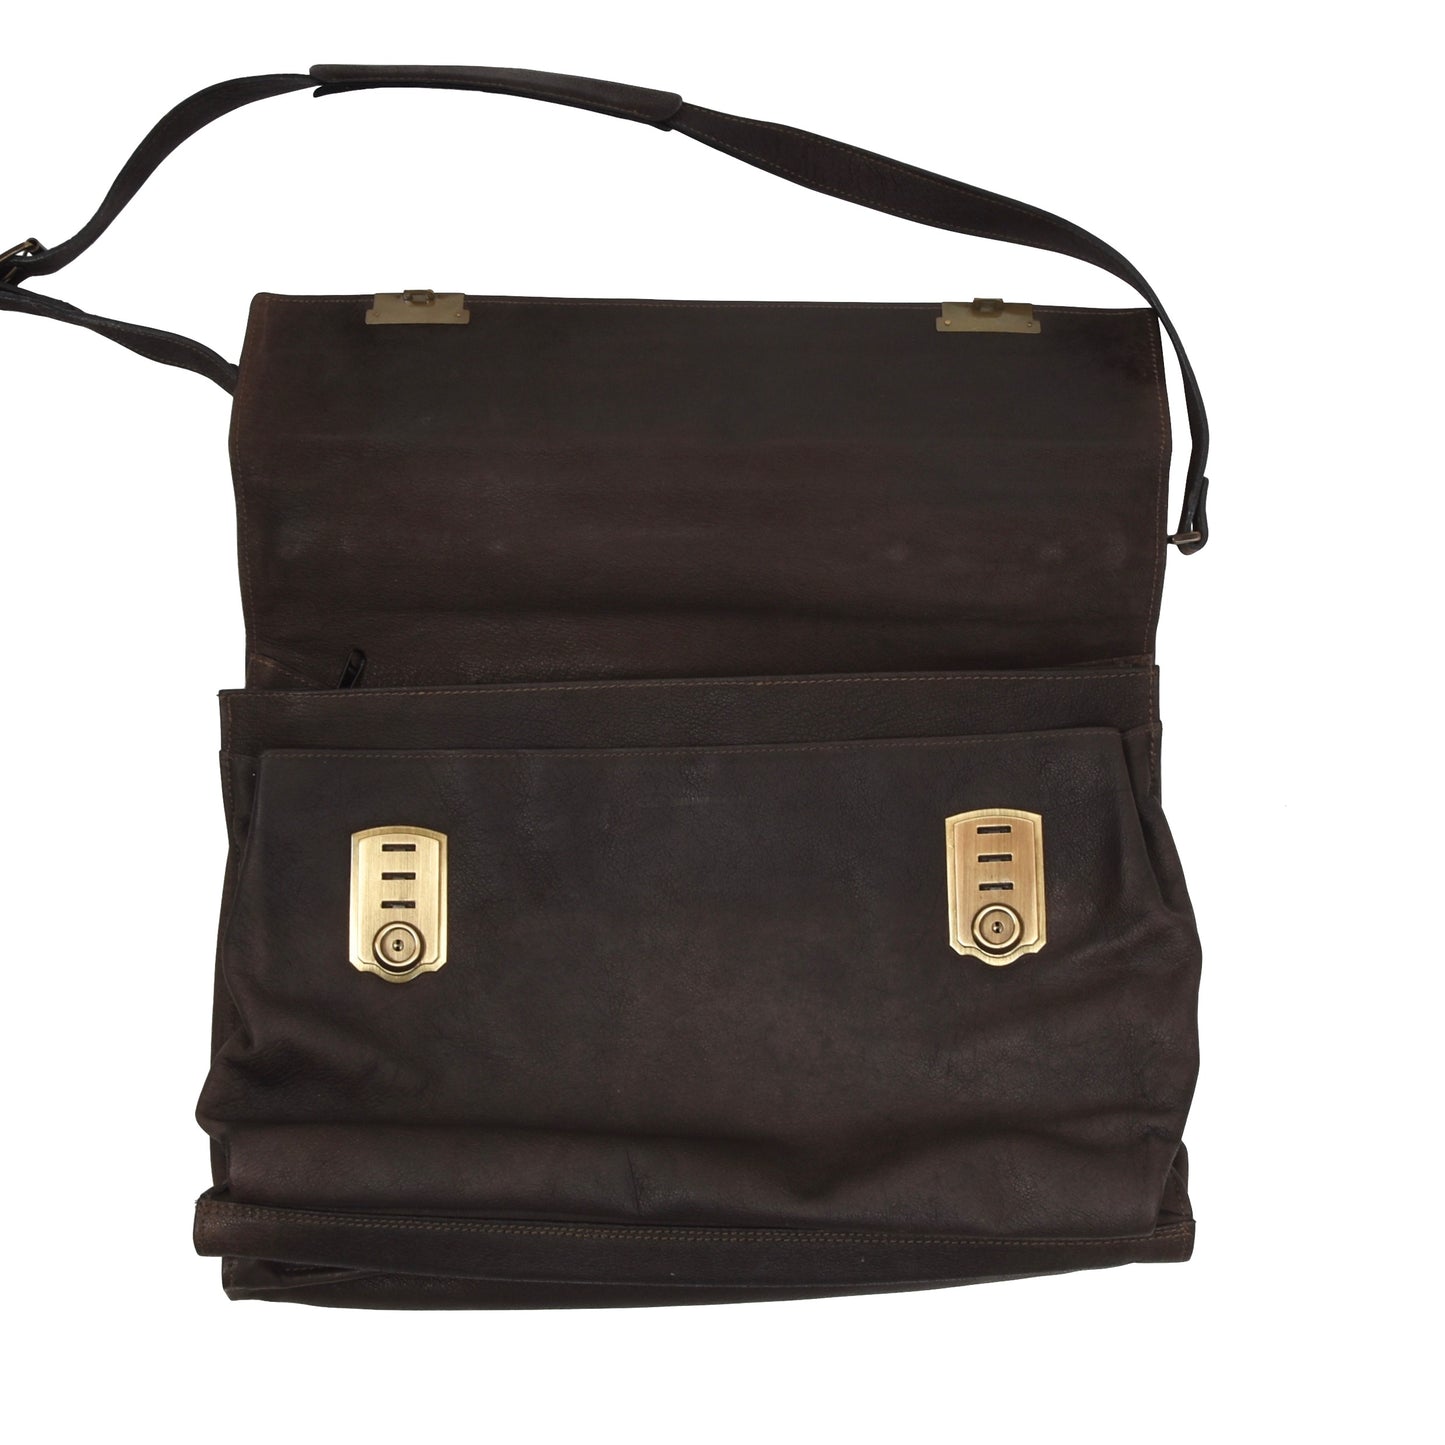 Traveller Jean Weipert Buffalo Leather Messenger Bag - Brown